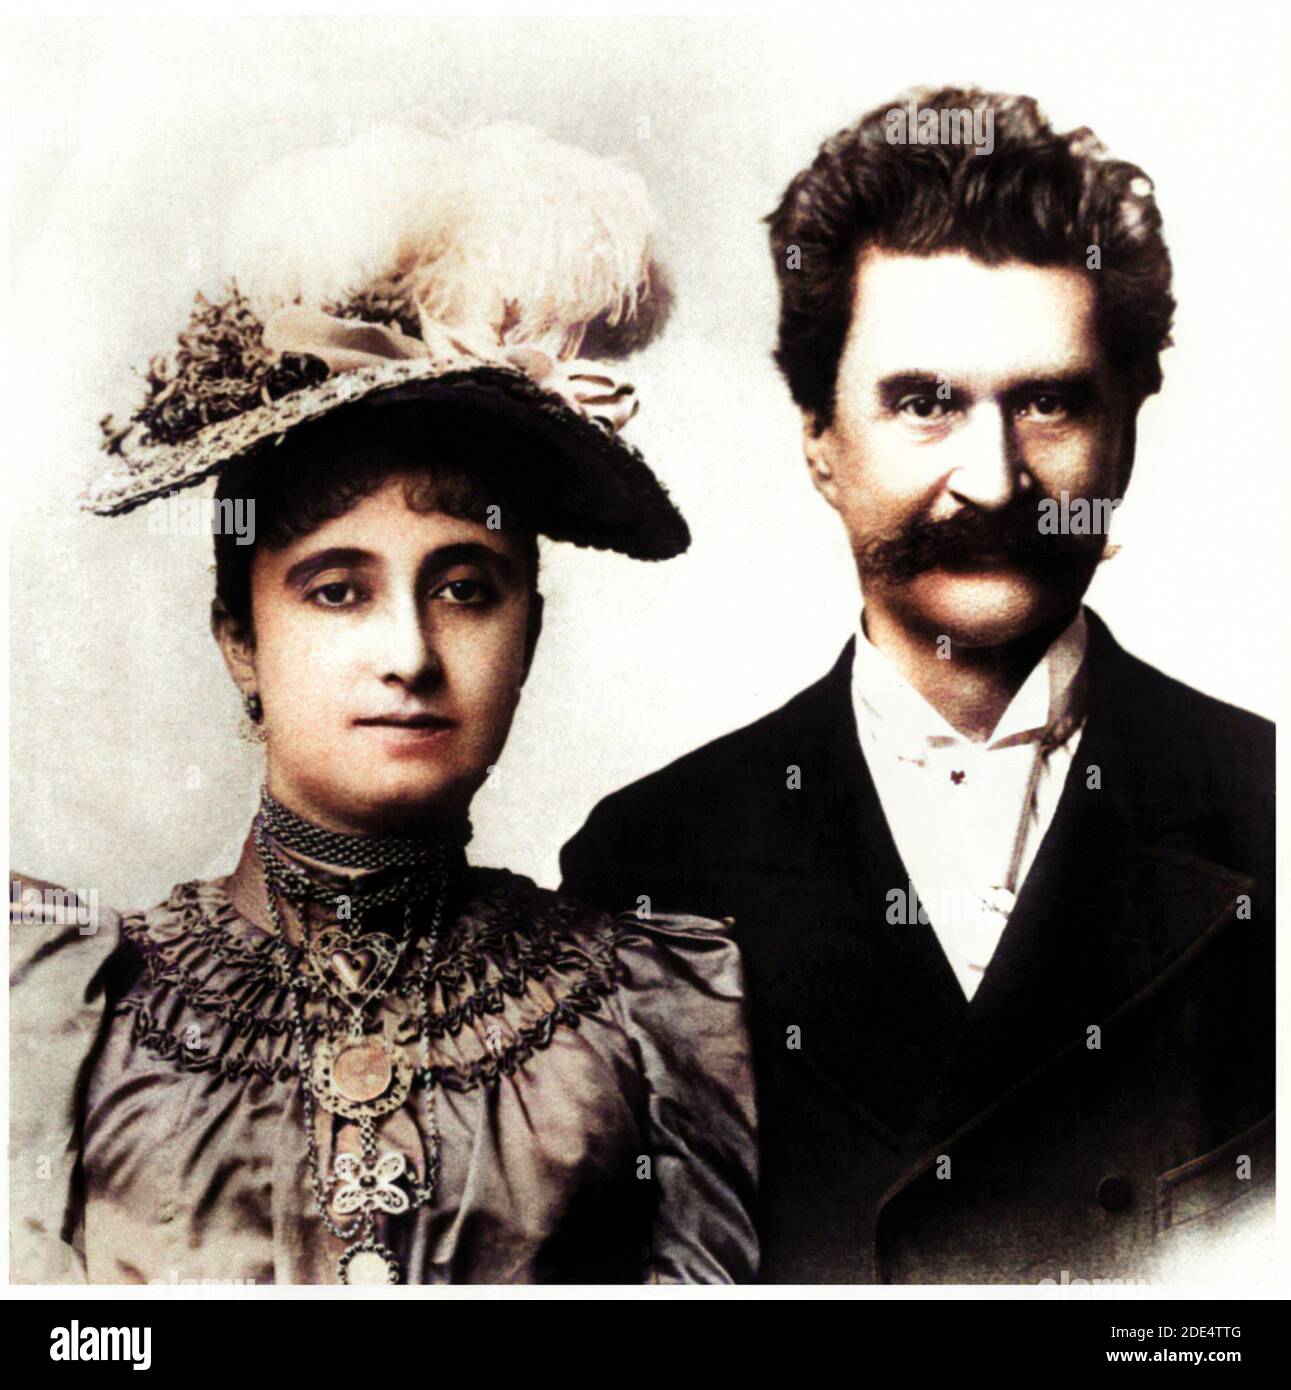 1887 ca, AUSTRIA : il compositore austriaco DI musica JOHANN STRAUSS Jr (1825 - 1899 ) con la sua 3 a moglie ADELE DEUTSCH (1856 - 1930 ) si sposò nell' agosto 1887 . Soprannominato ' The Waltz King', popolare compositore di musica da ballo e di opere , di cui il più famoso è DIE FLEDERMAUS . Fotografo sconosciuto .fotografo sconosciuto . COLORIZZATO DIGITALMENTE . - ADELE - COMPOSITORE - OPERETTA - WALTZER - VALZER - WALZER - CLASSICA - RITRATTO - RITRATTO - MUSICISTA - MUSICA - BAFFI - BAFFI - CRAVATTA - CRAVATTA - JUNIOR - -- ARCHIVIO GBB Foto Stock